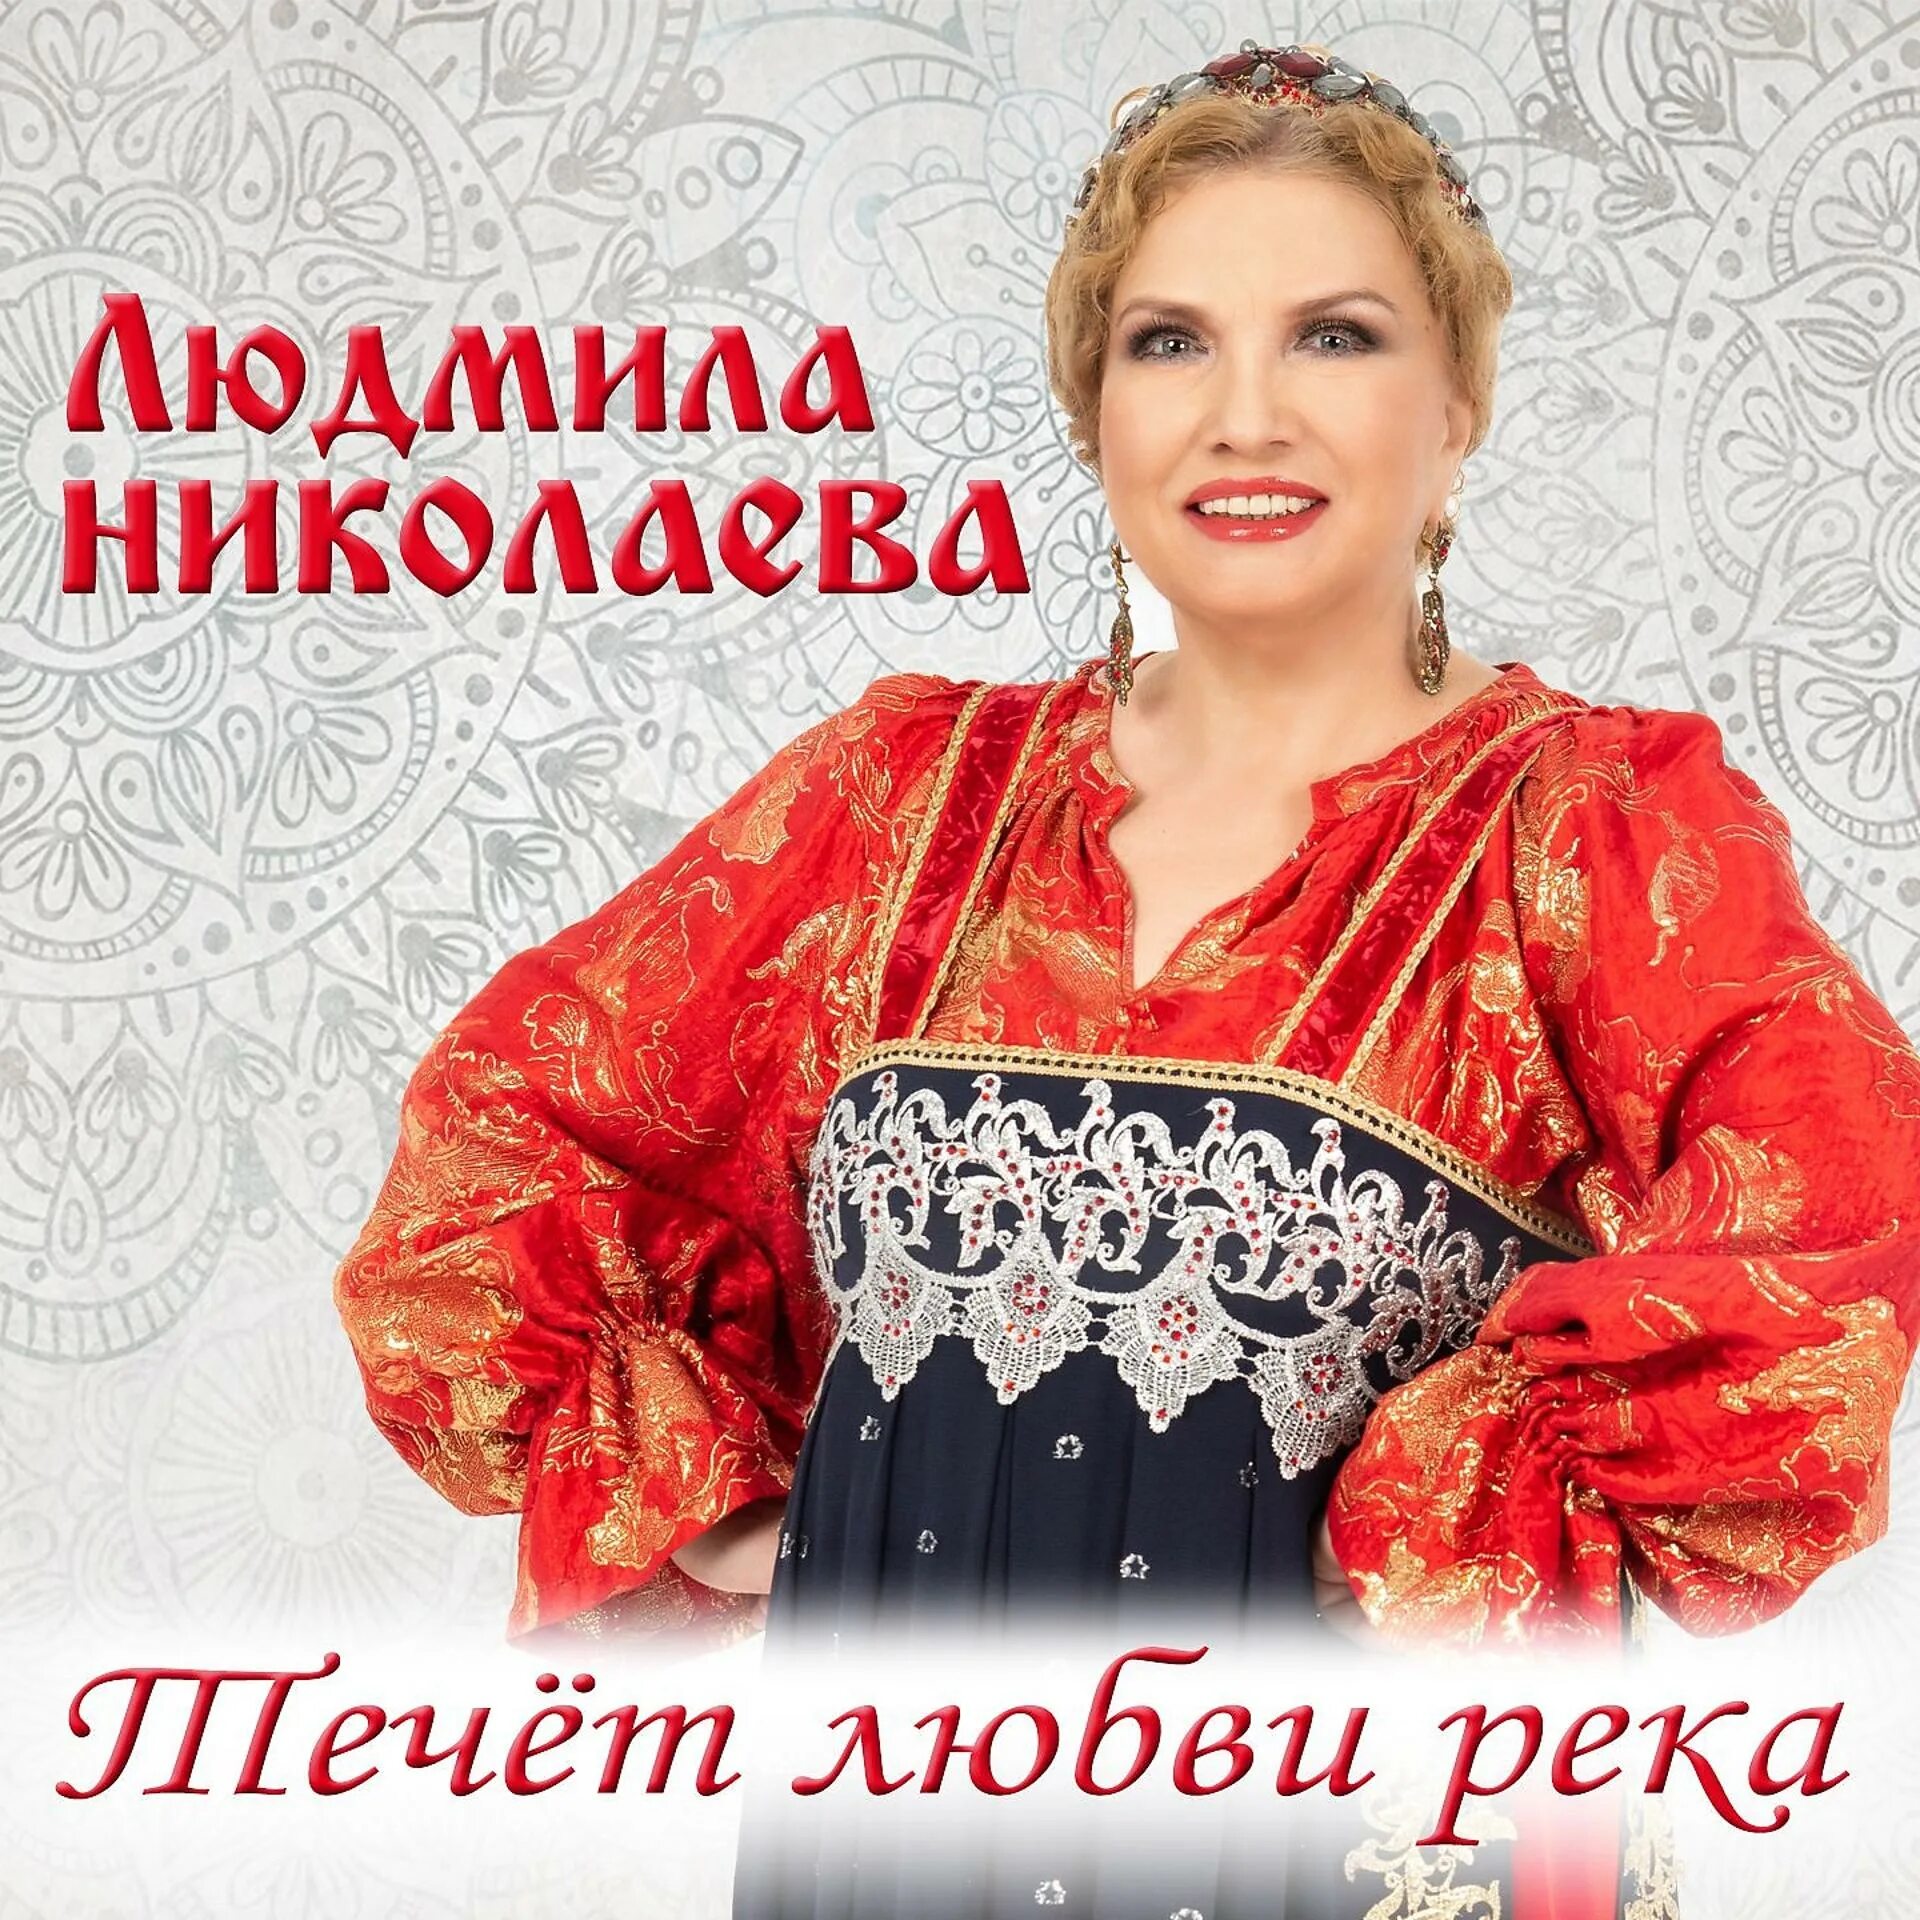 Альбом песен Людмилы Николаевой. Песня людмилы николаевой русская душа